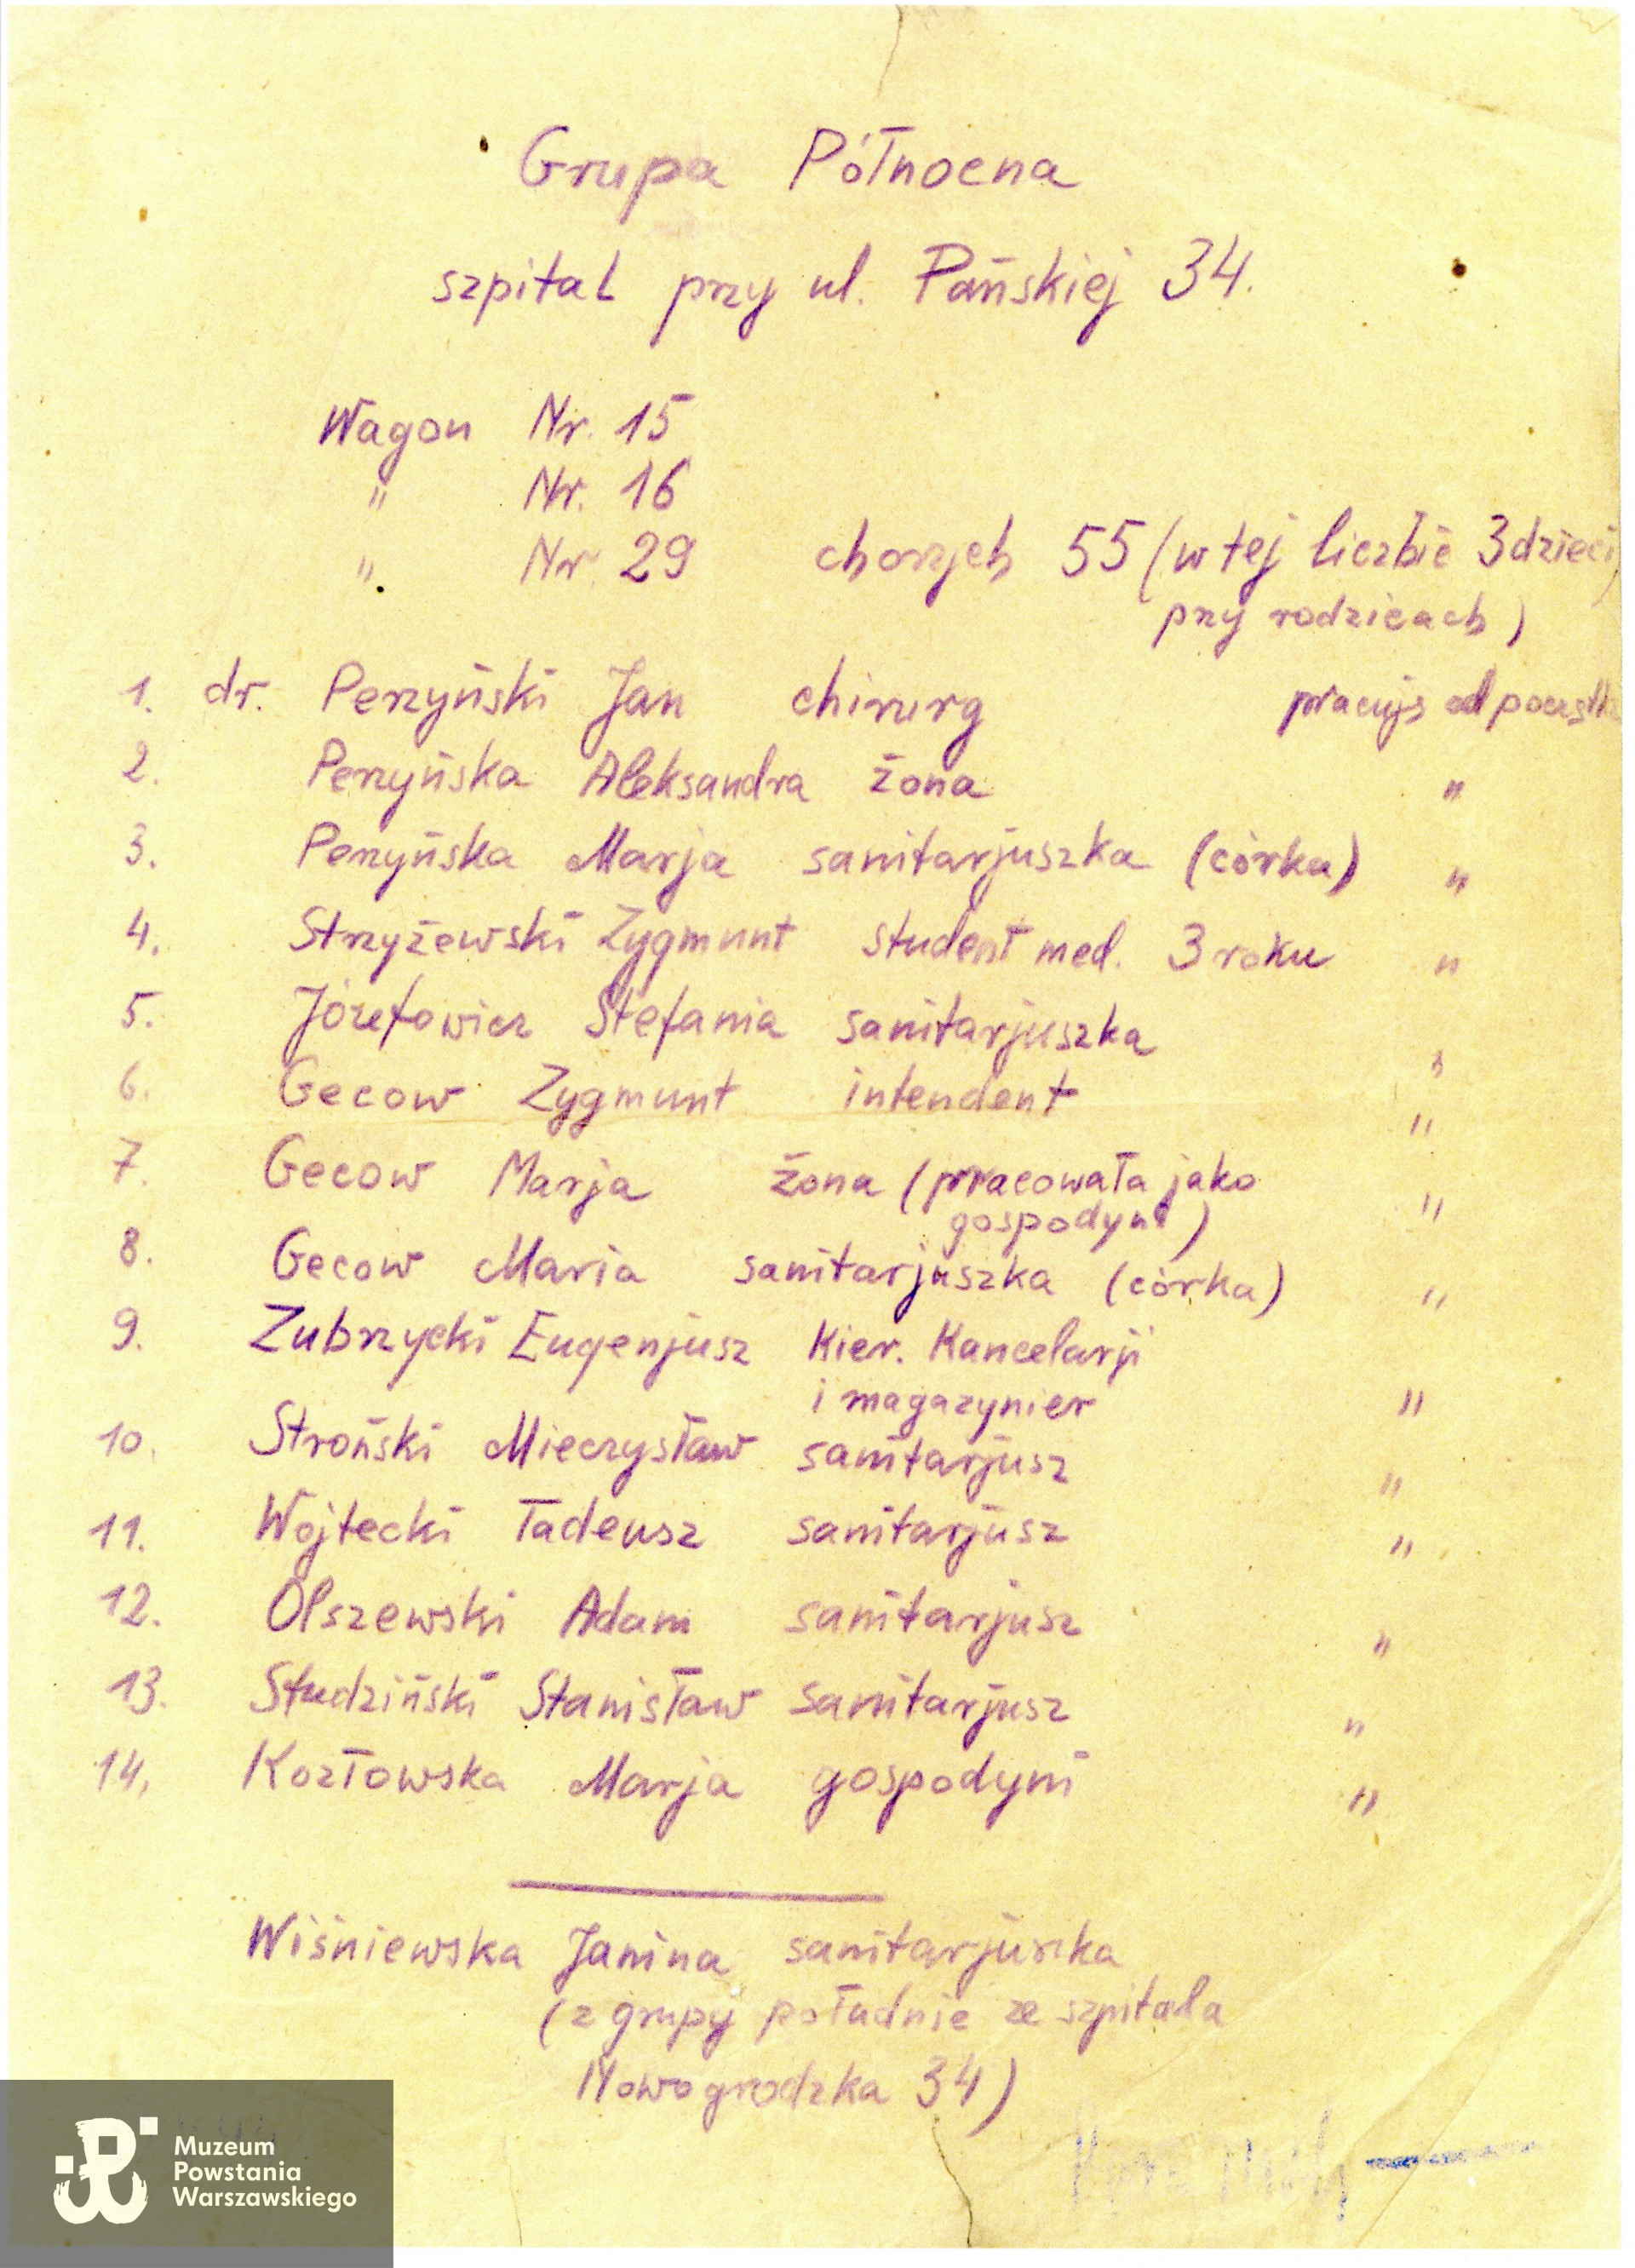 Wykaz rannych i personelu szpitala przy ul. Pańskiej 34 sporządzony przez dr Jana Perzyńskiego w celu przydziału wagonów w pociągu ewakuacyjnym (15.10.1944)
